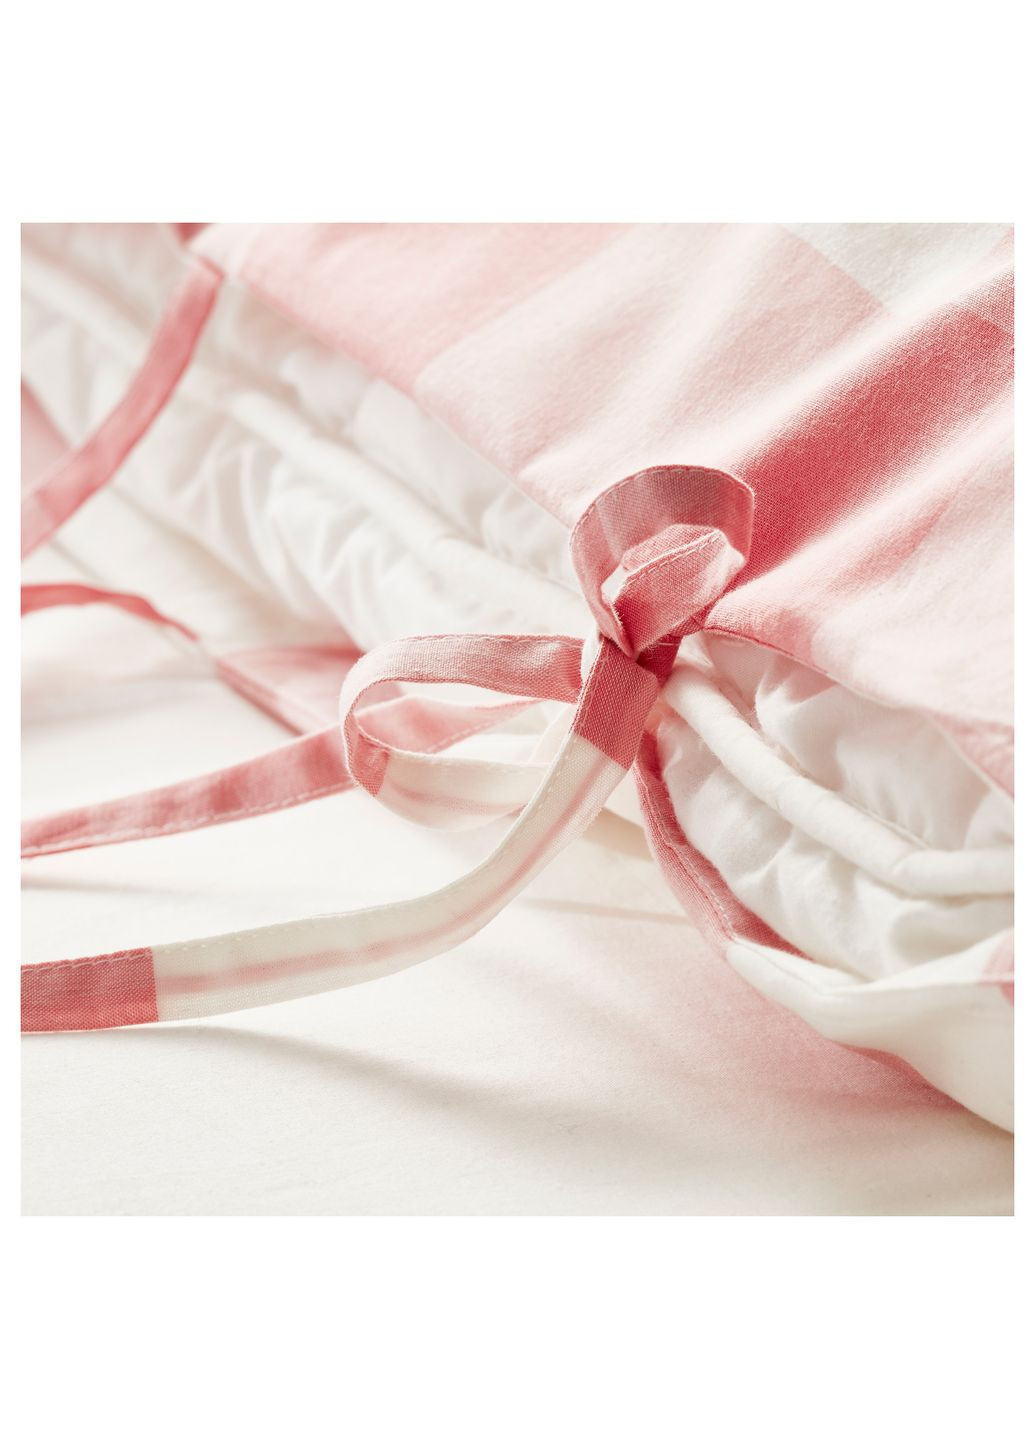 Постельное белье розовый/белый 200200/5060 см IKEA (273423680)